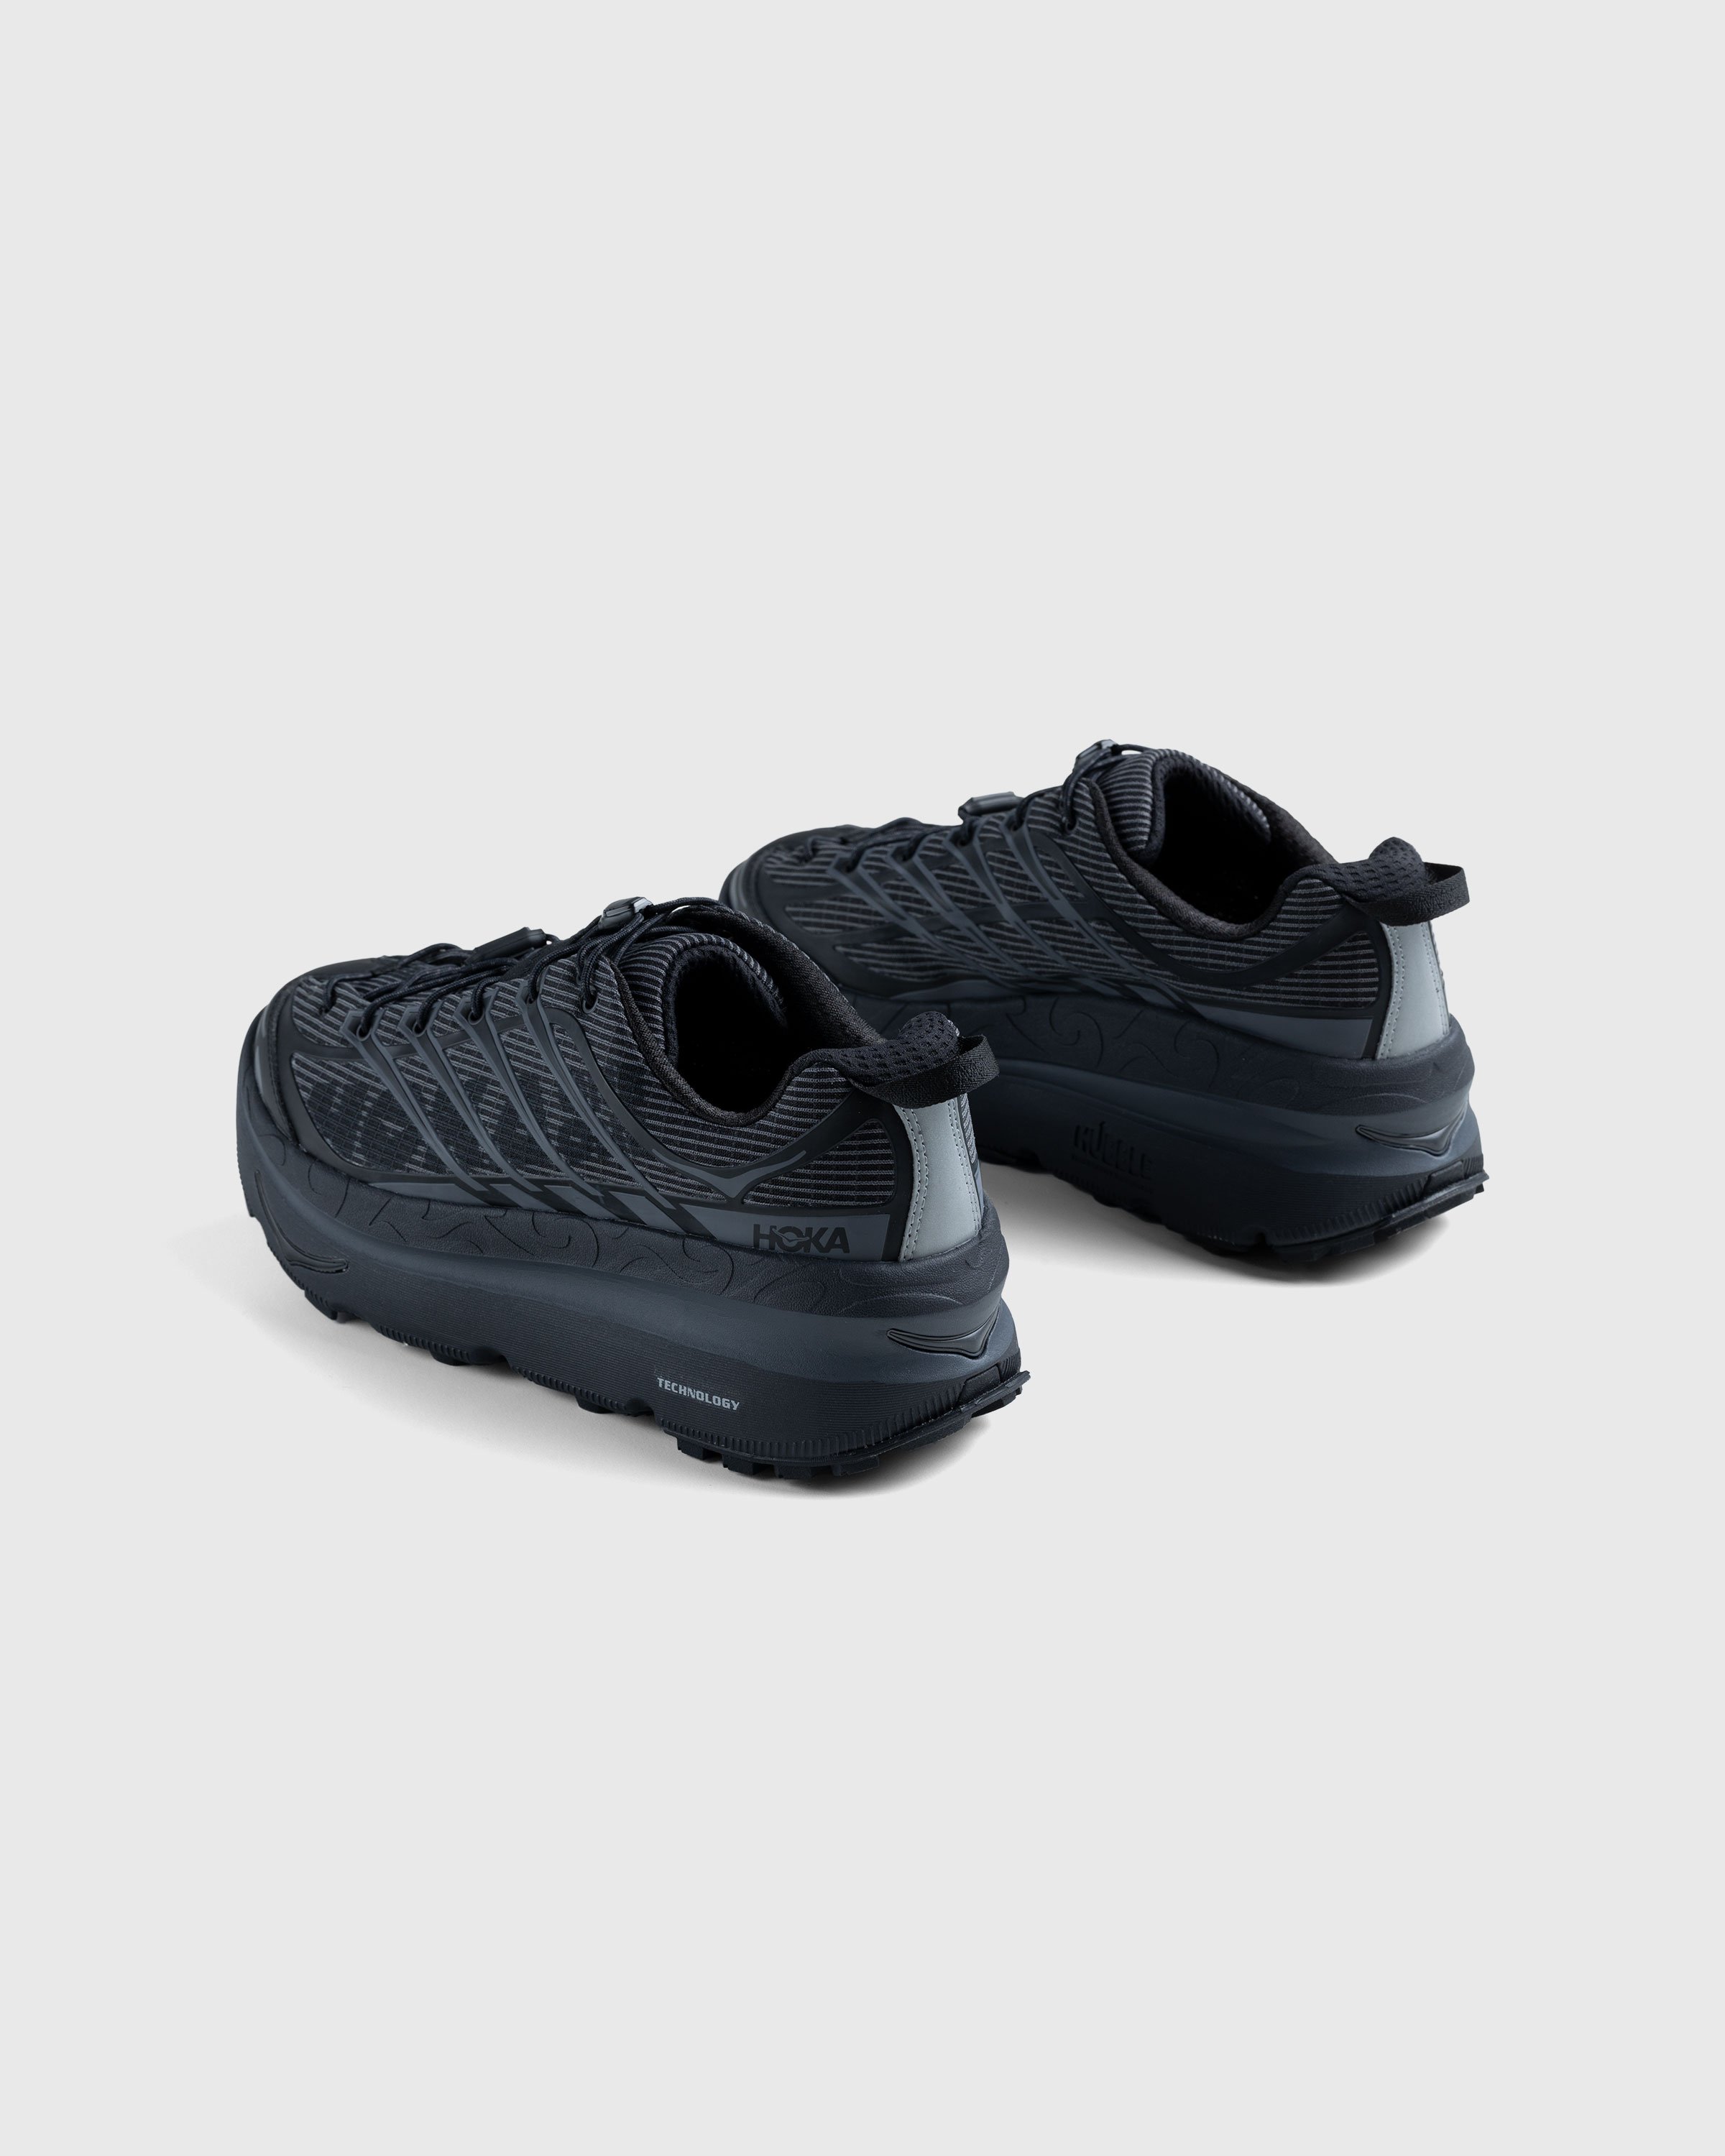 HOKA - U Mafate OG Black - Footwear - Black - Image 4